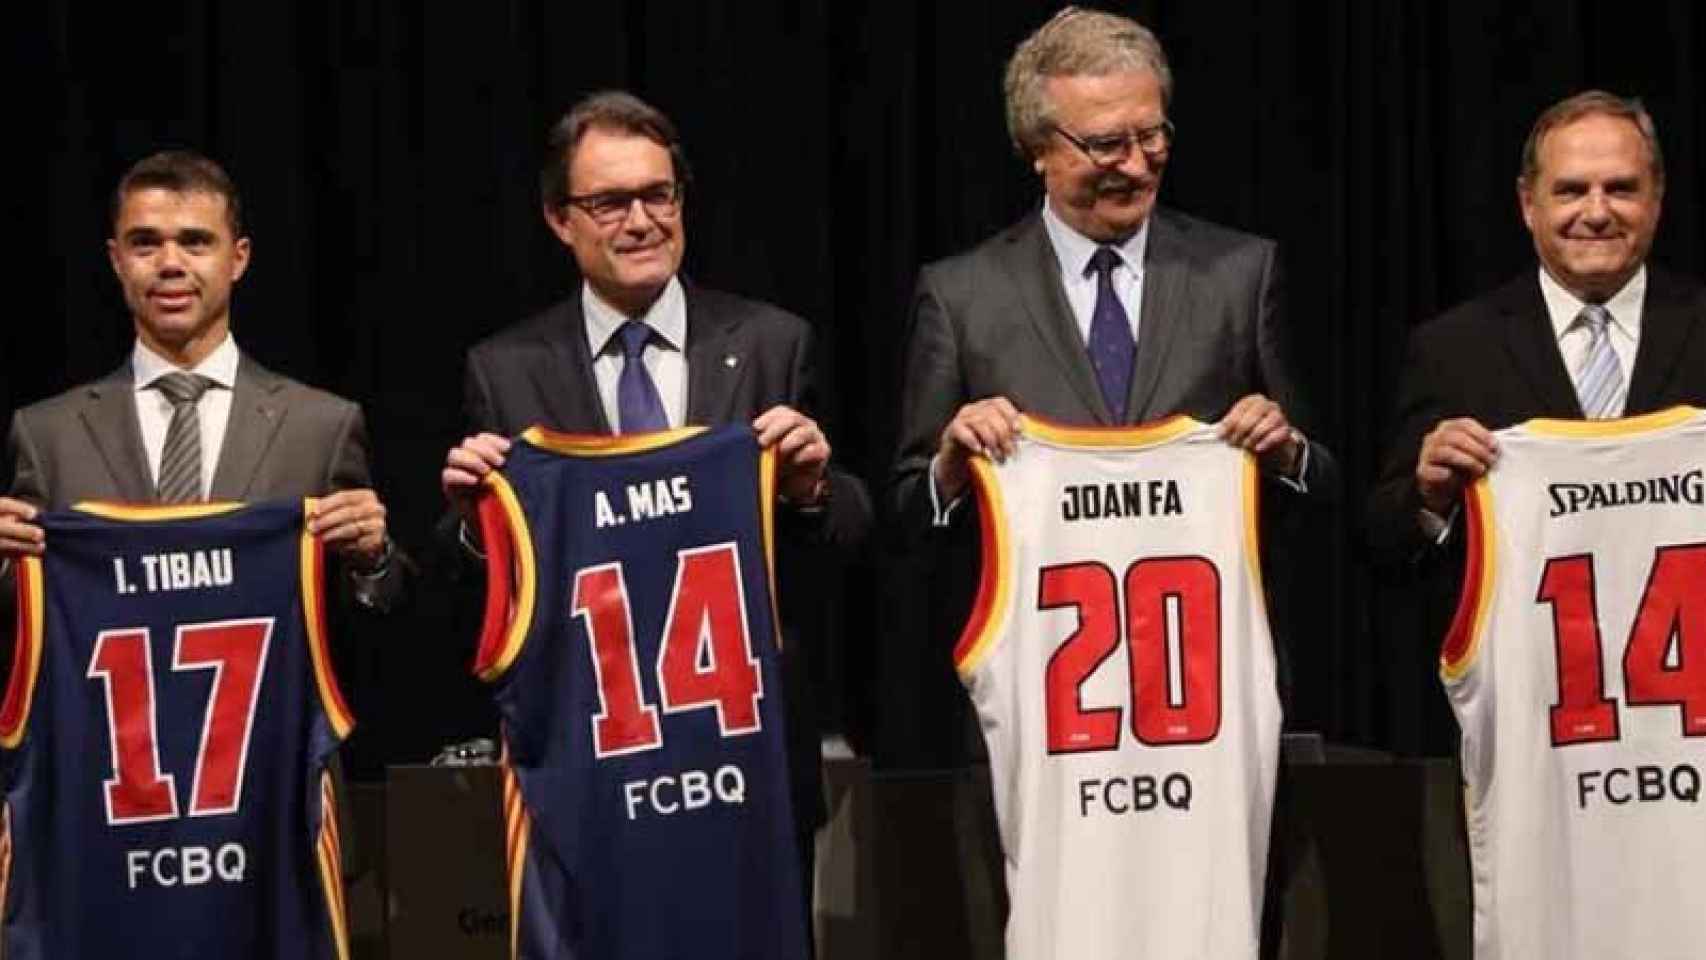 Ivan Tibau, secretario general del Deporte, junto a Artur Mas y Joan Fa, presidente de la Federación Catalana de Baloncesto / GENCAT